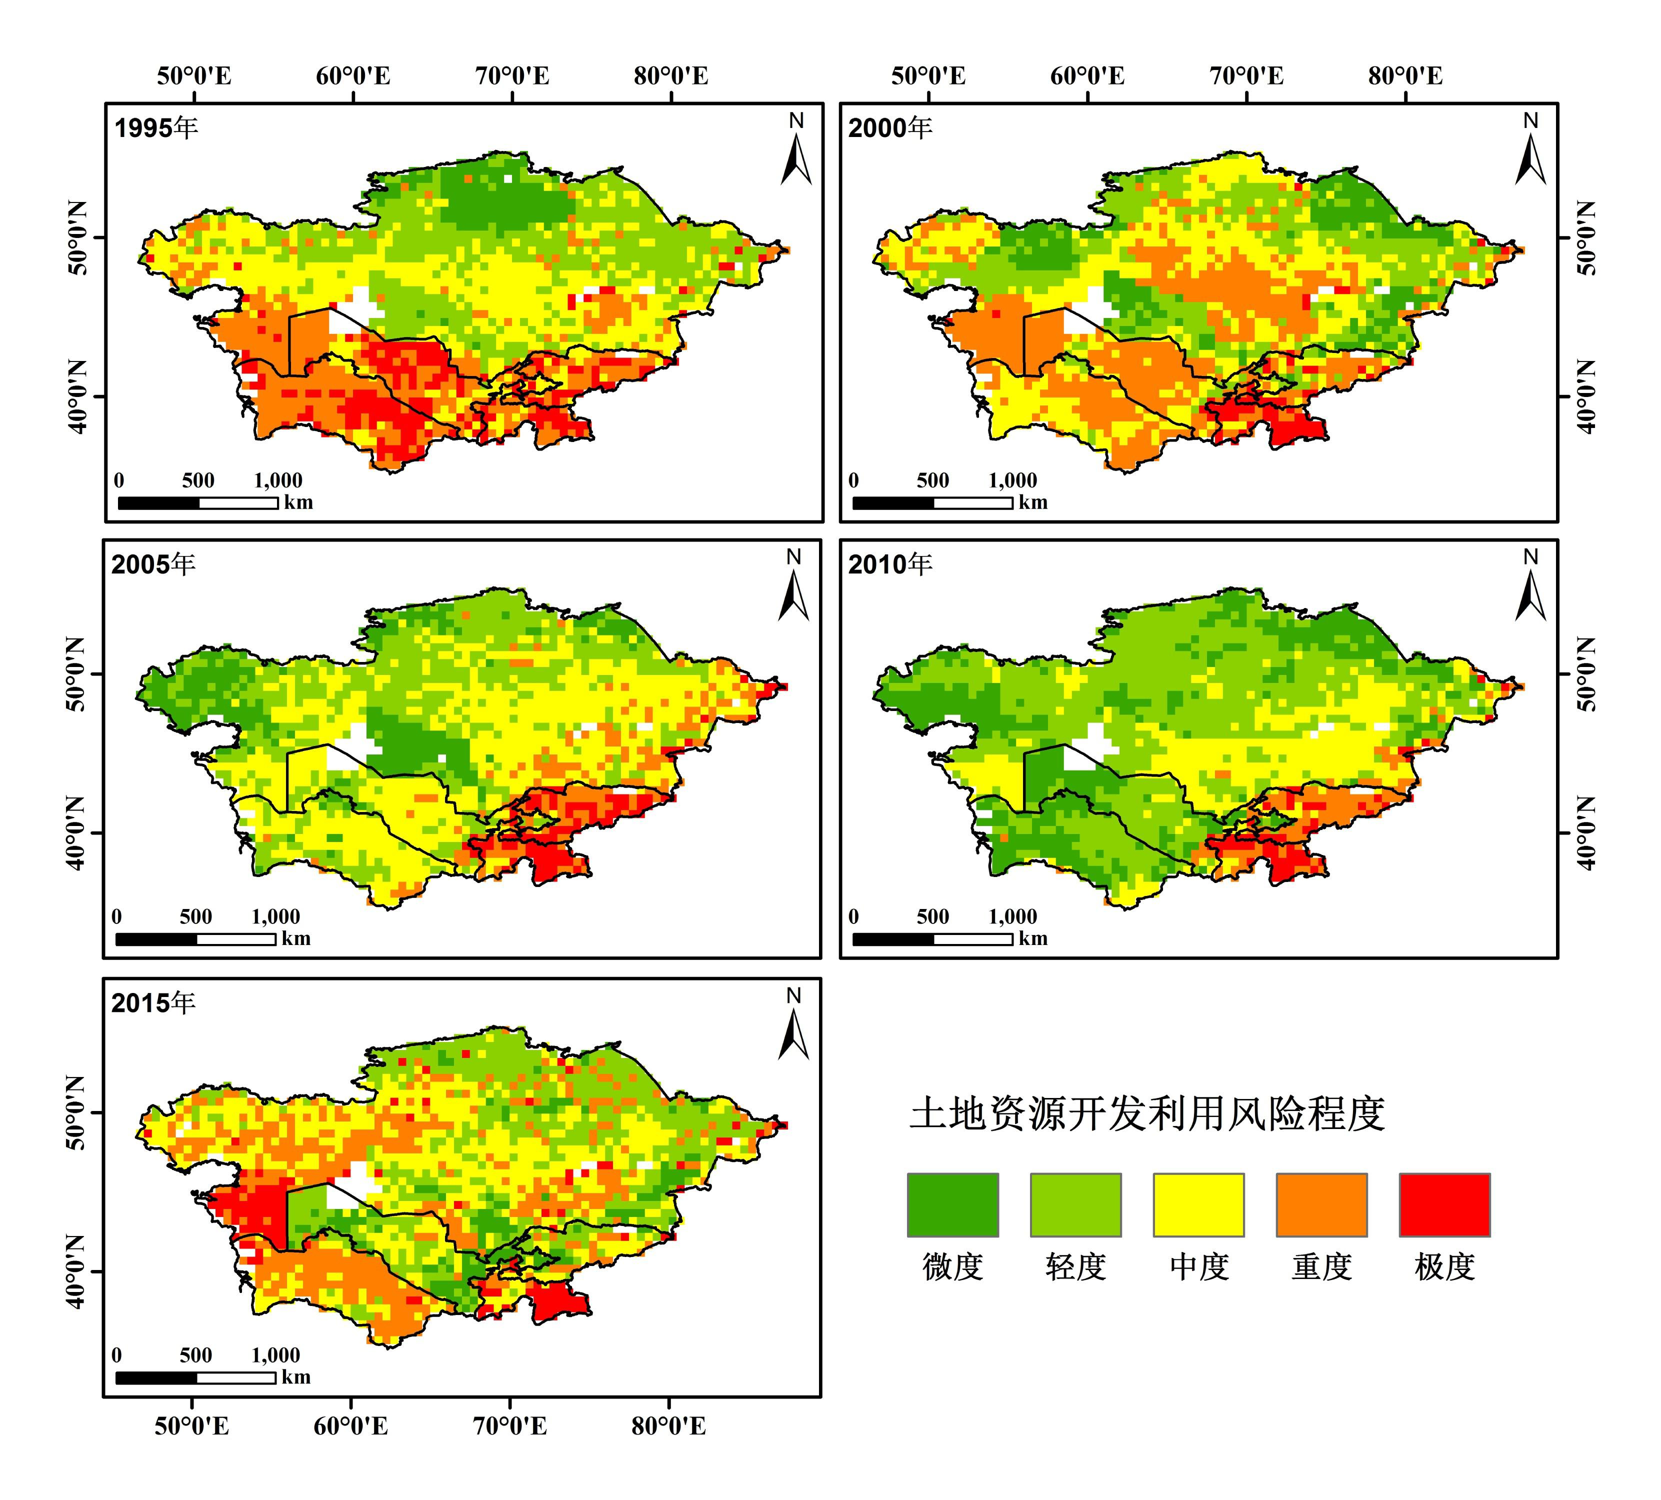 中亚五国土地资源开发利用风险数据集（V1.0，1995-2015）